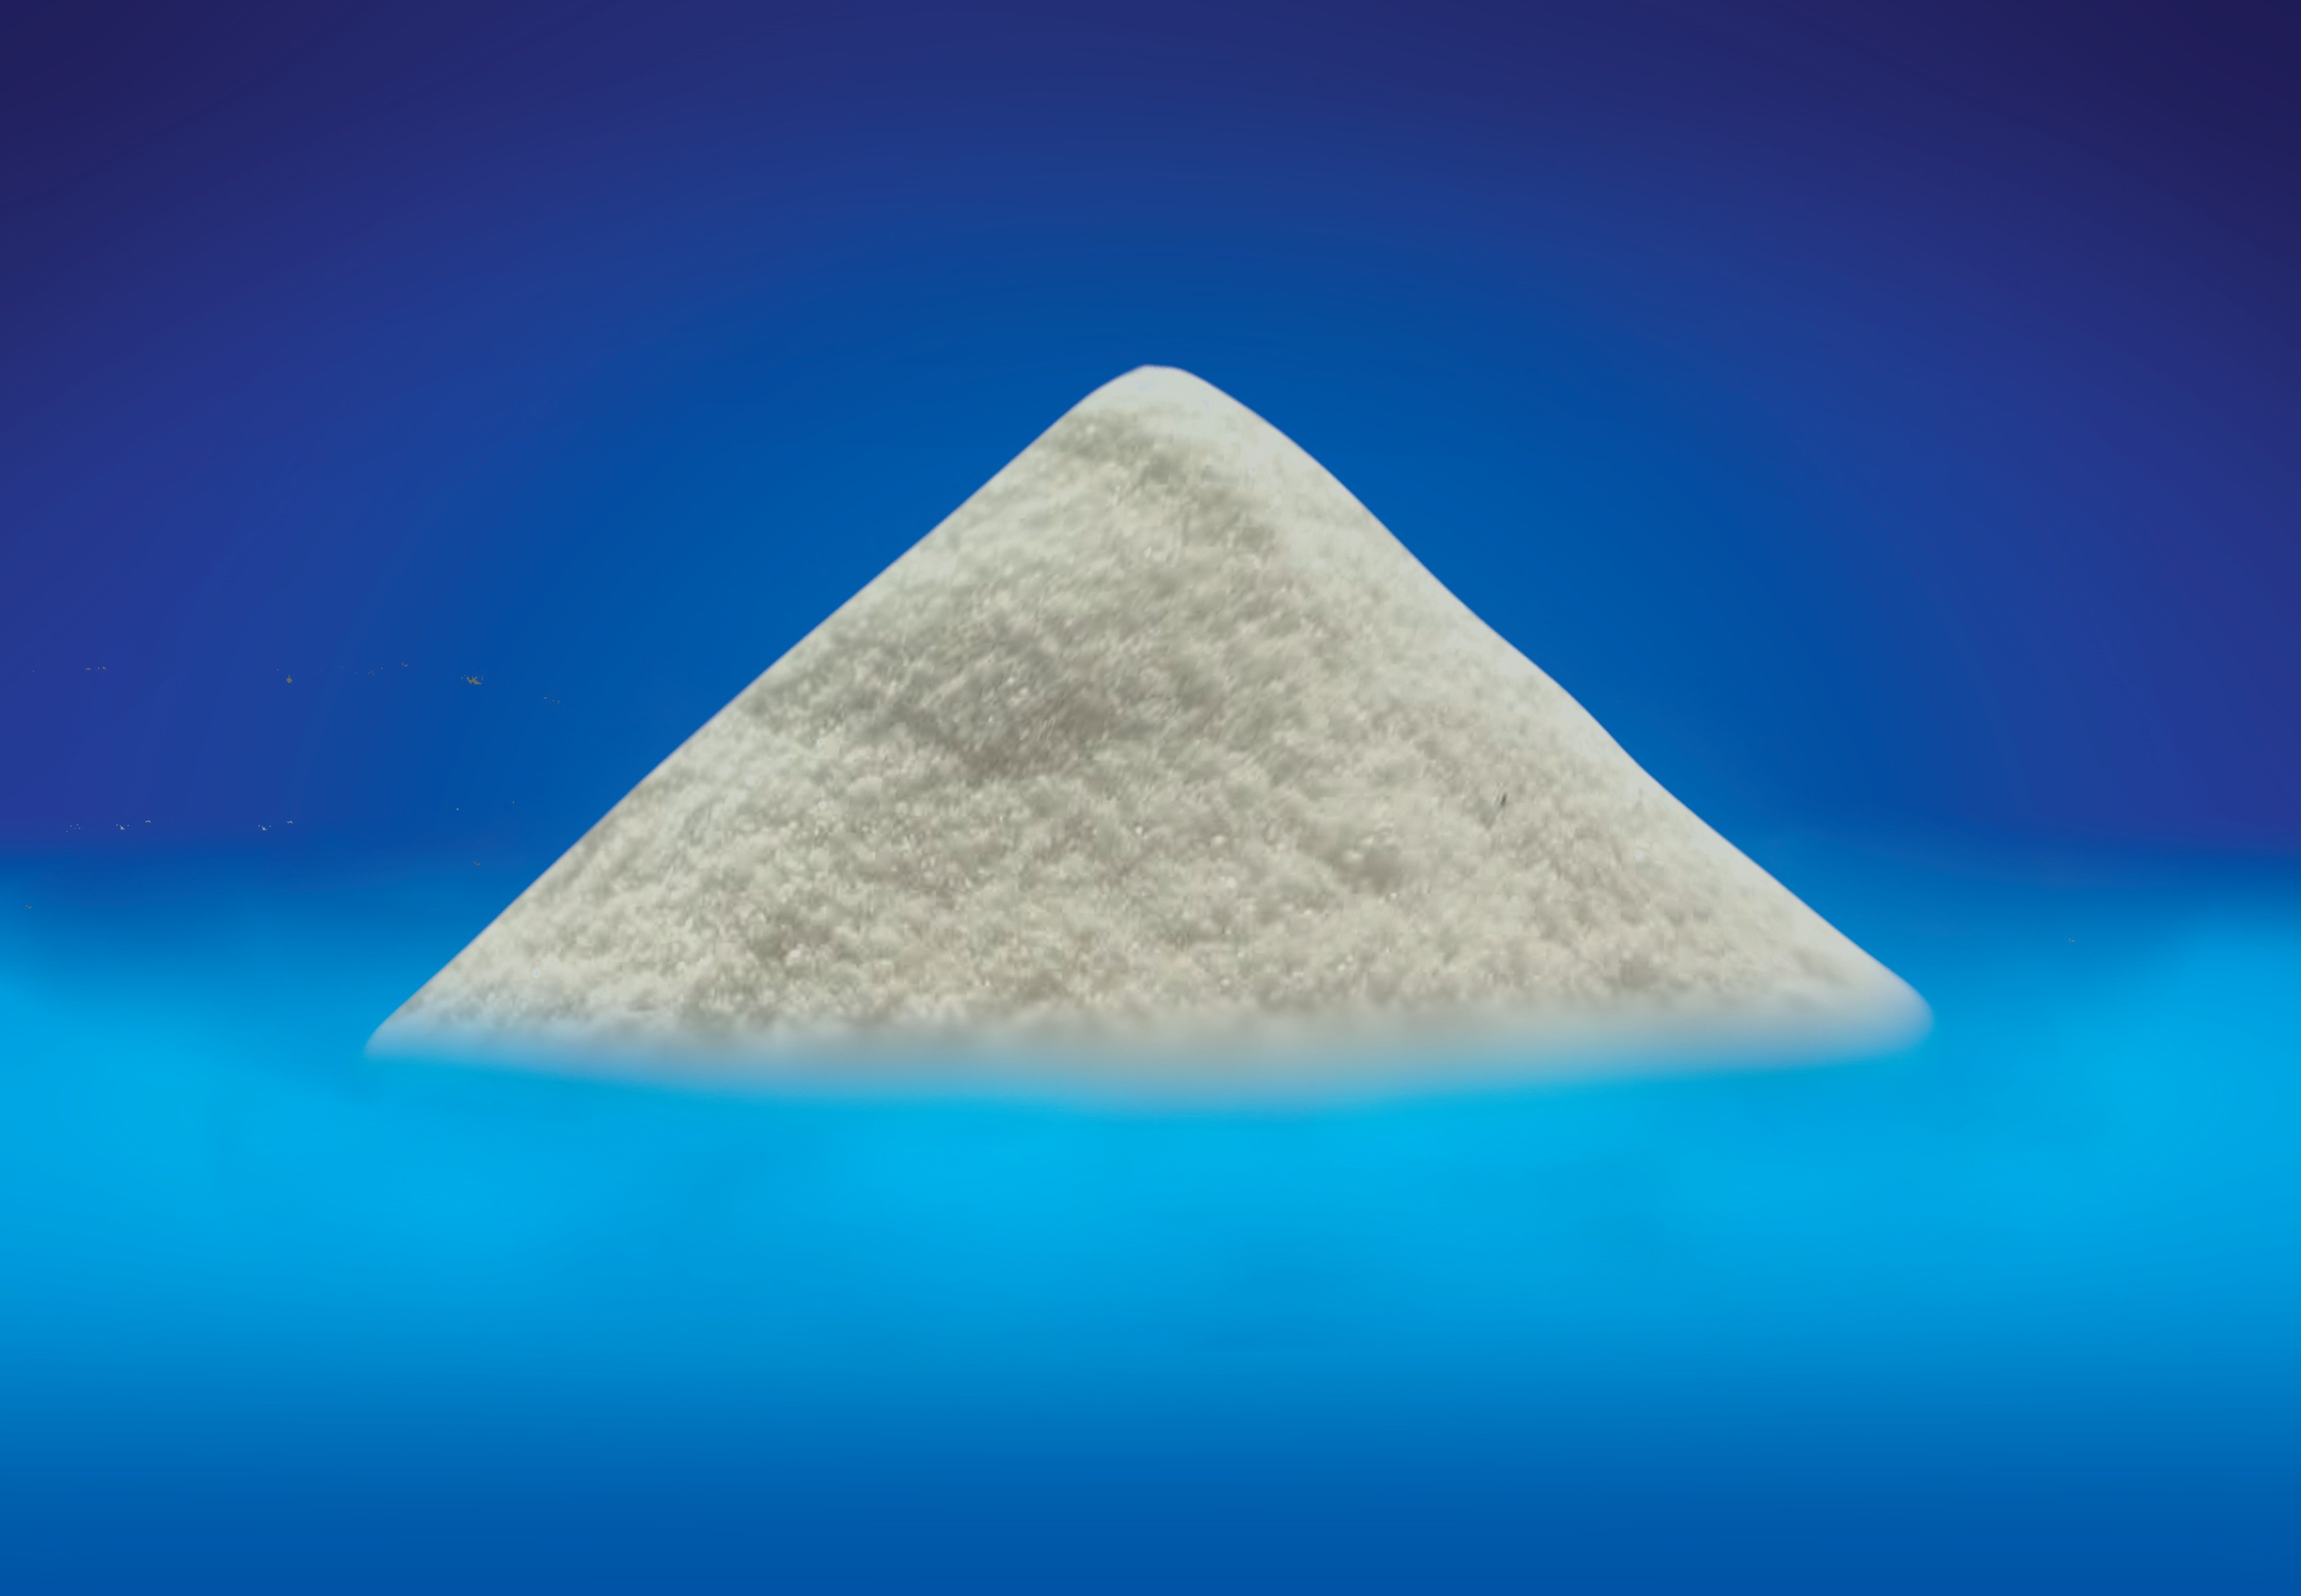 ギ酸カルシウムの白い結晶性粉末動物飼料添加物 7